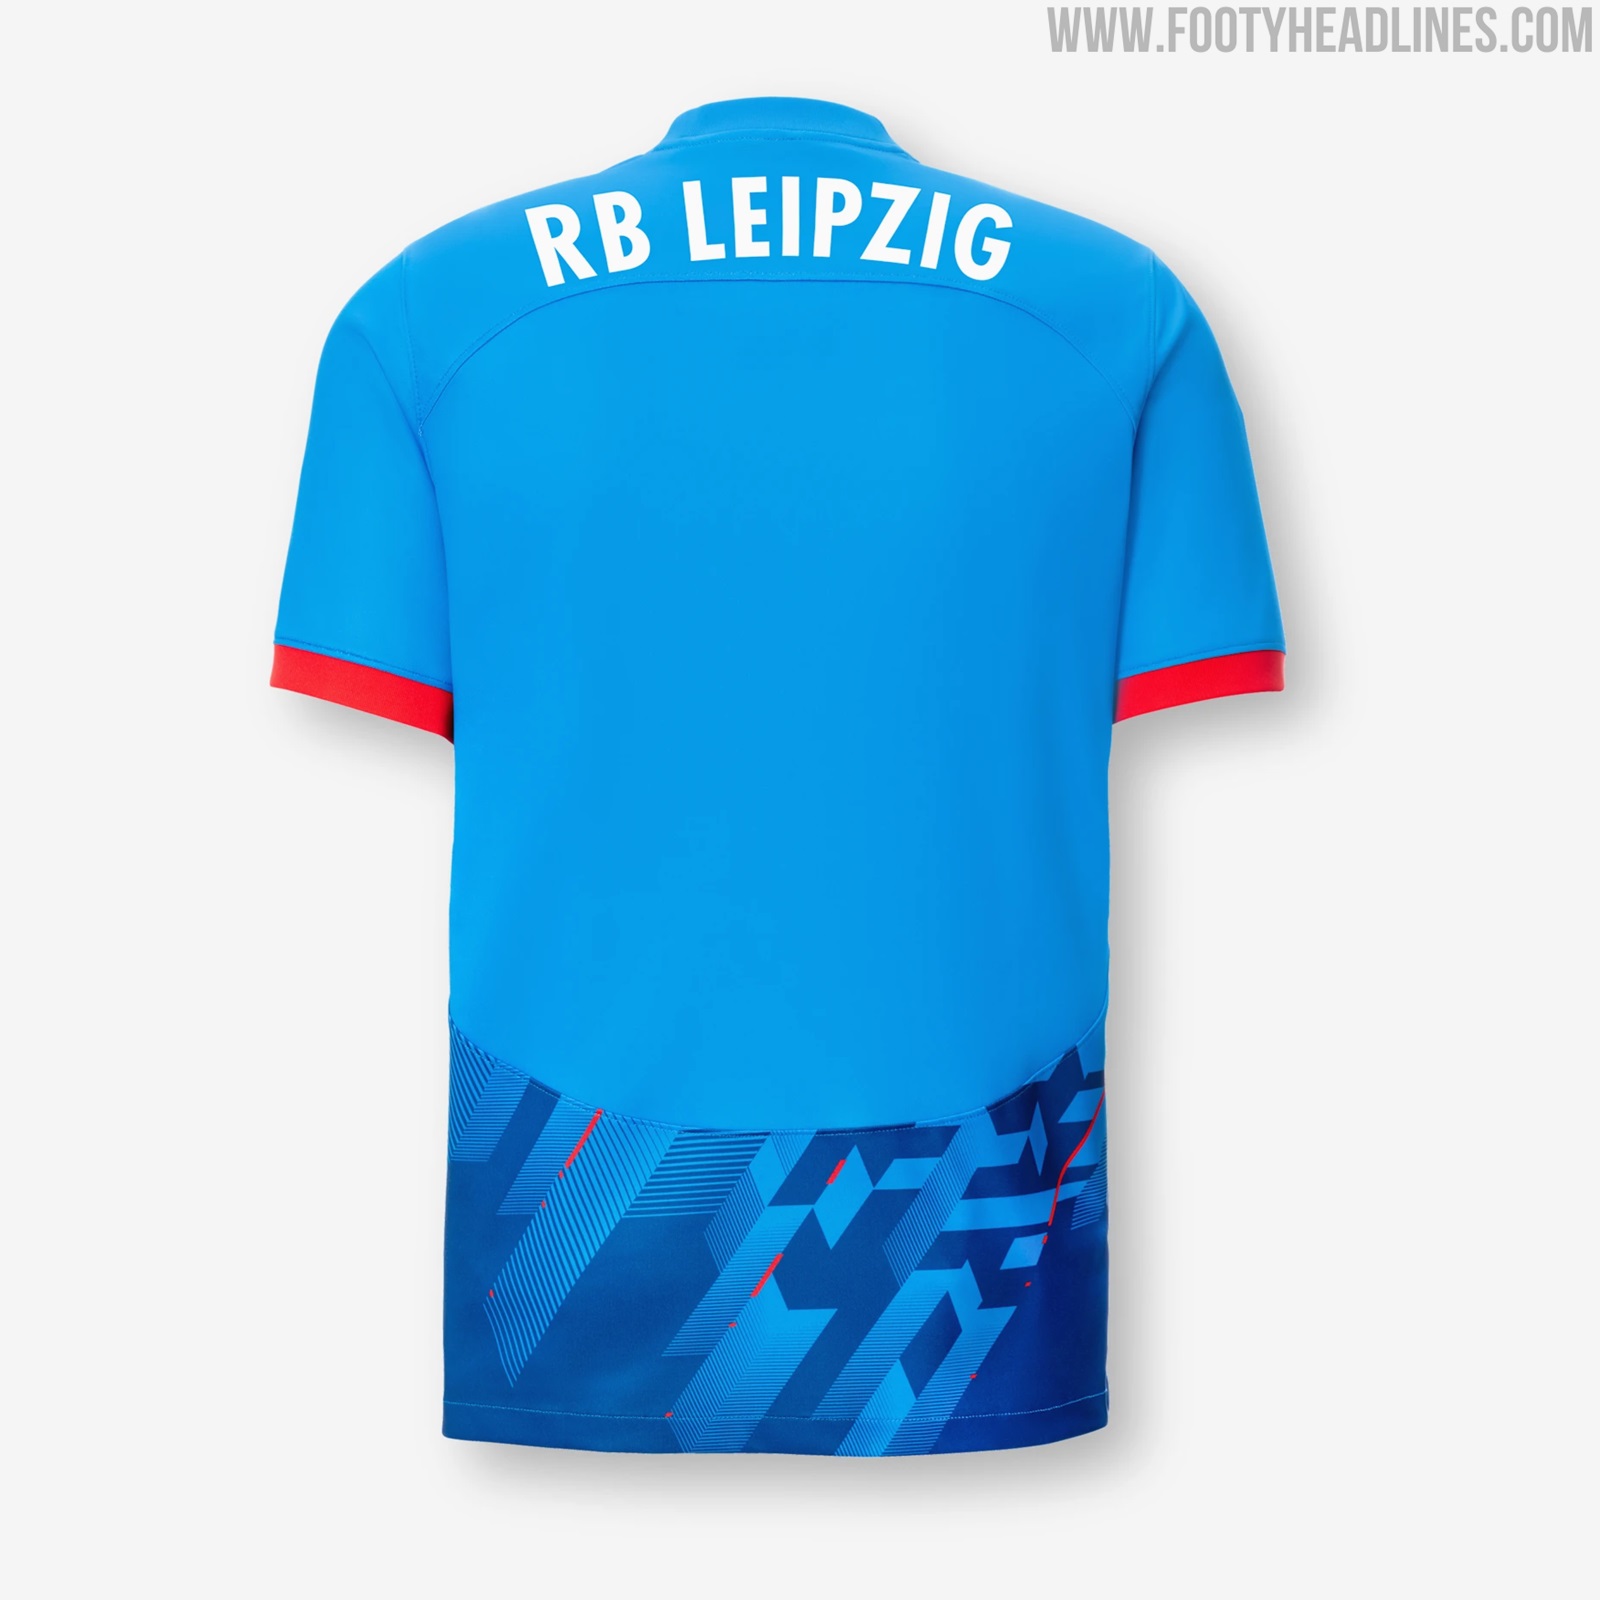 RB Leipzig 23-24 Away Kit Released - Debut vs Bayern - Footy Headlines